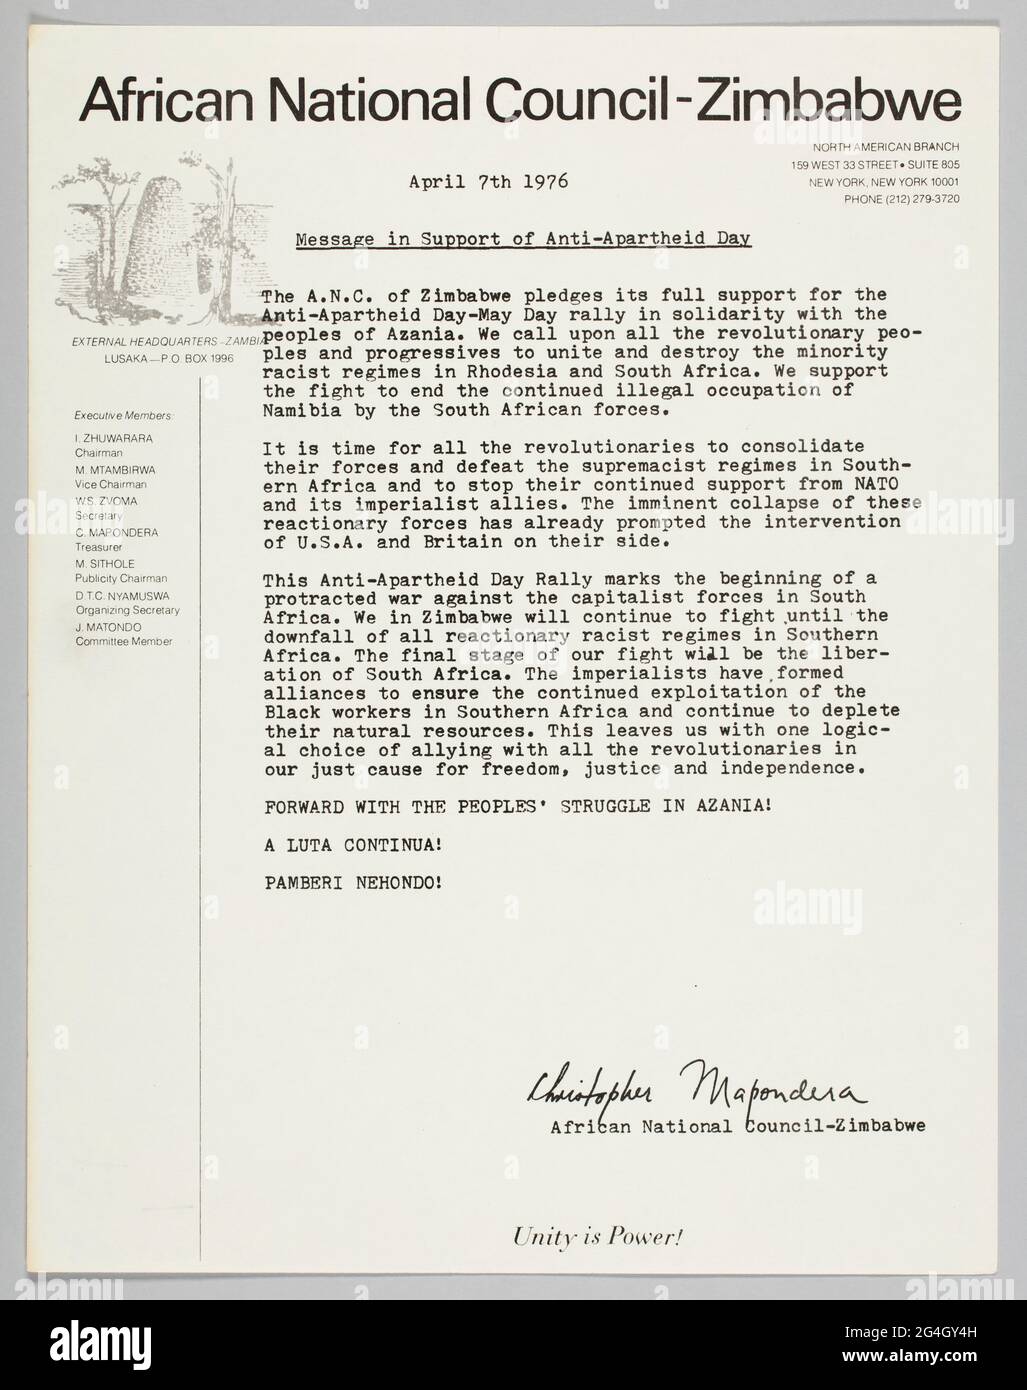 In diesem Brief des Afrikanischen Nationalrats und Simbabwes wird seine Unterstützung für den 1. Mai des Anti-Apartheid-Tages in New York City zum Ausdruck gebracht. Die Überschrift und der Titel lautete: [Afrikanischer Nationalrat-Simbabwe / NORDAMERIKANISCHE ZWEIGSTELLE / 159 WEST 33rd STREET SUITE 805 / NEW YORK, NEW YORK 10001 / PHONE (212) 379 3720 / 7. April 1976 / Message in Support of Anti-Apartheid Day]. Der Brief wird von Christopher Mapondera unterzeichnet. Die Rückseite des Briefes ist leer. Stockfoto